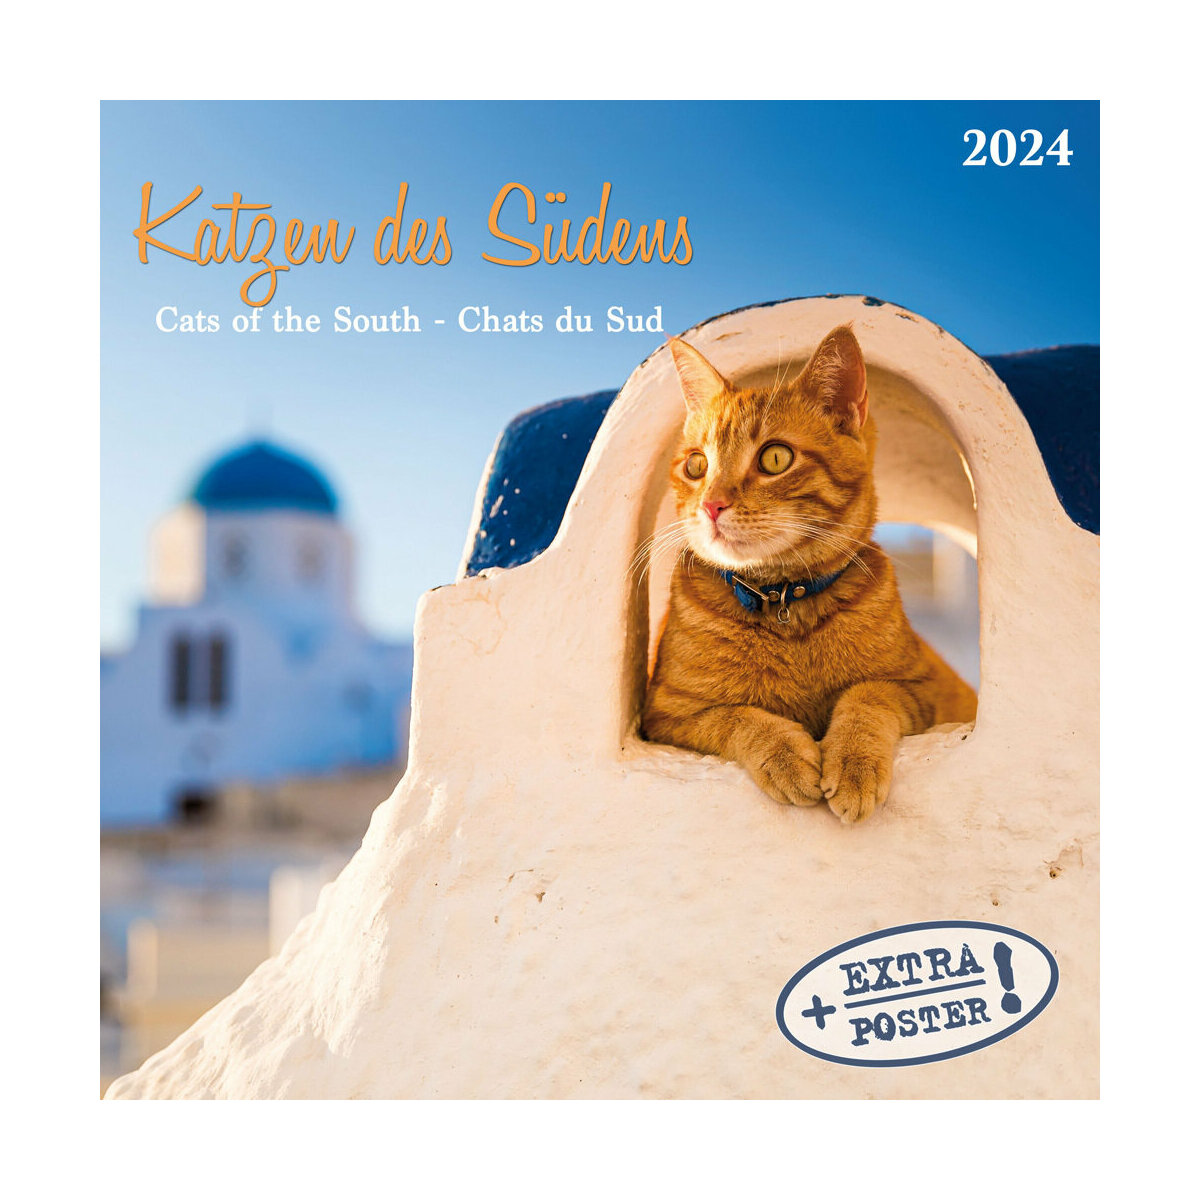 Calendrier Magnifique 2024 - Calendrier Magnifique Tunisia